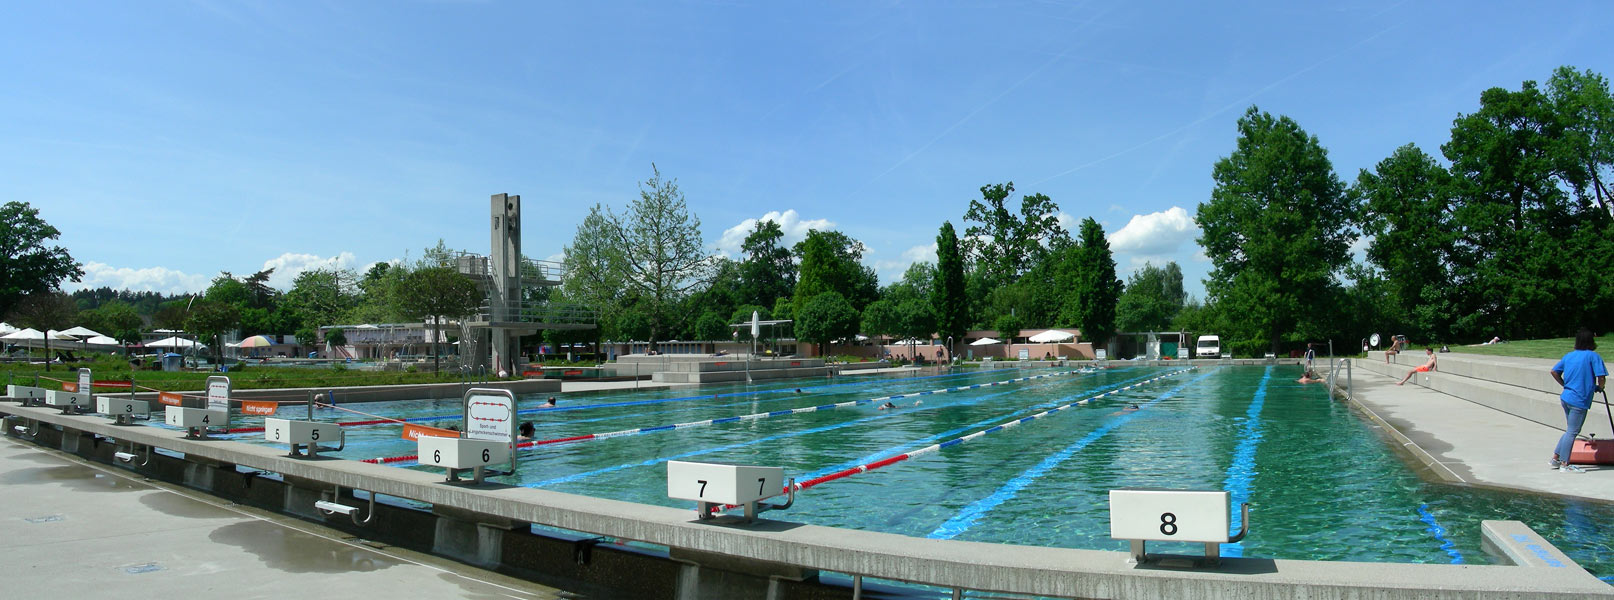 Schwimmbecken im Schwimmbad Langenthal